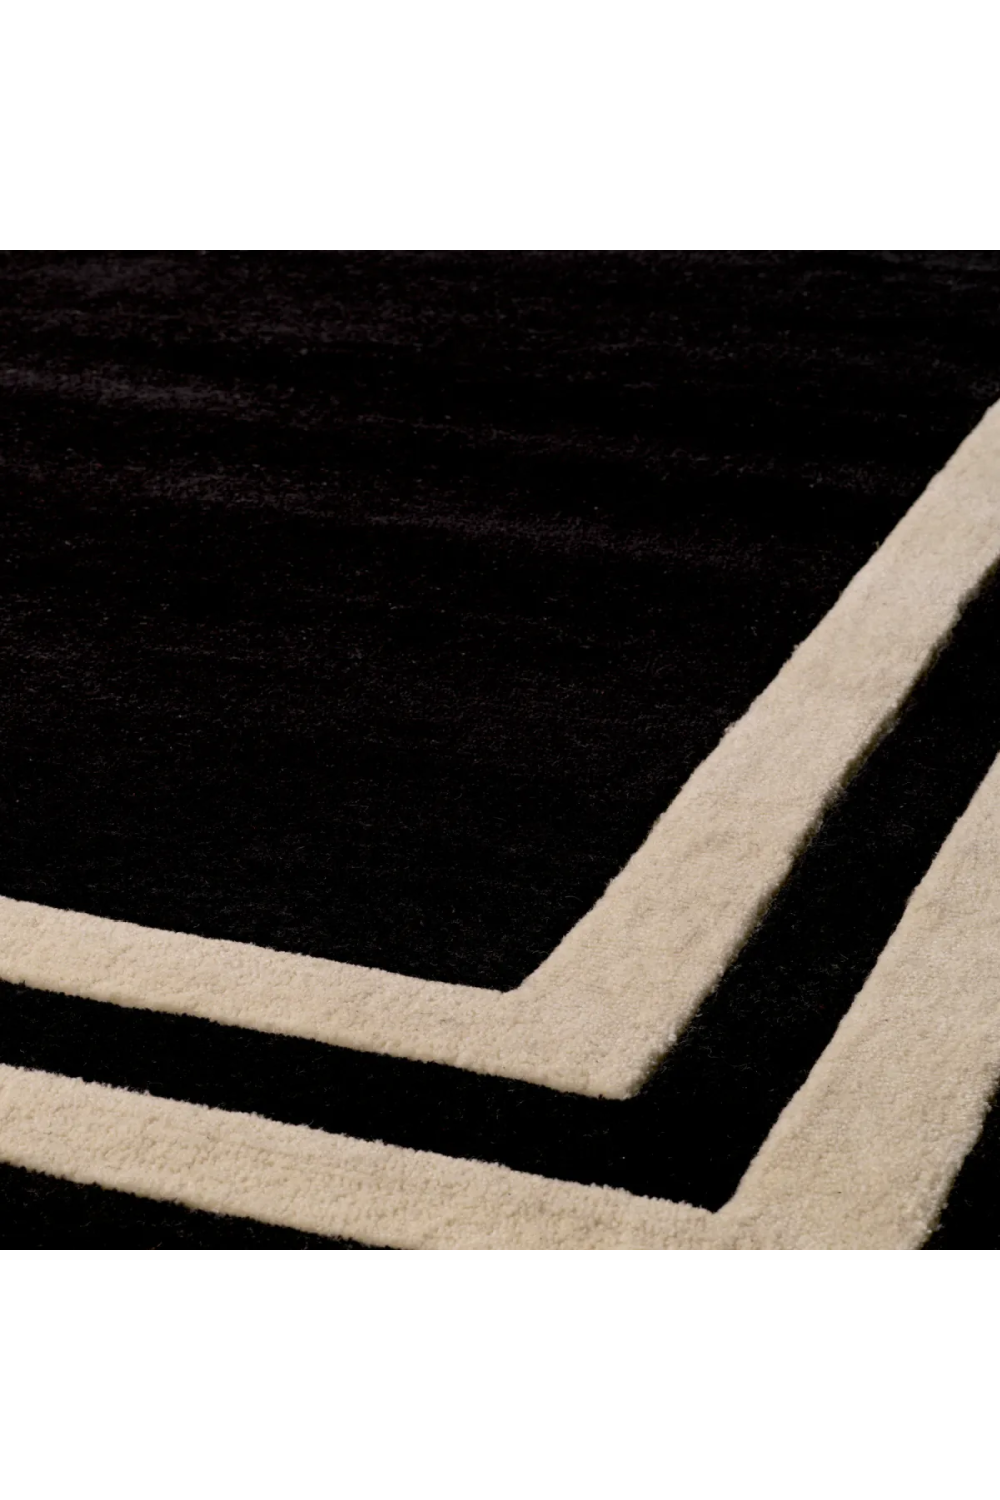 Black Carpet 7' x 10' | Eichholtz Celeste | Oroa.com